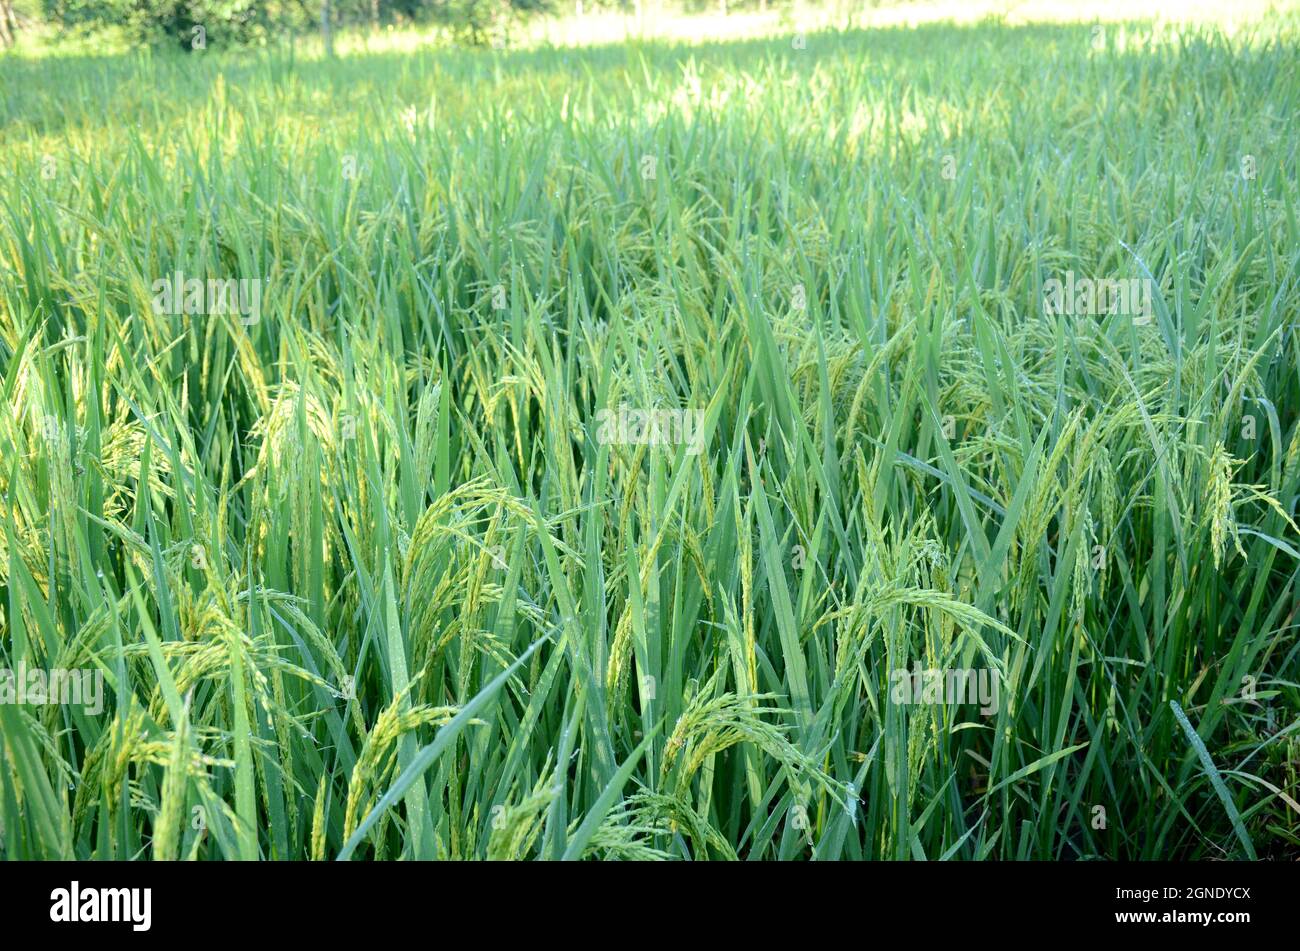 gros plan sur le bouquet de rizières mûres vertes en pleine croissance avec le grain dans la ferme sur fond vert-brun hors foyer. Banque D'Images